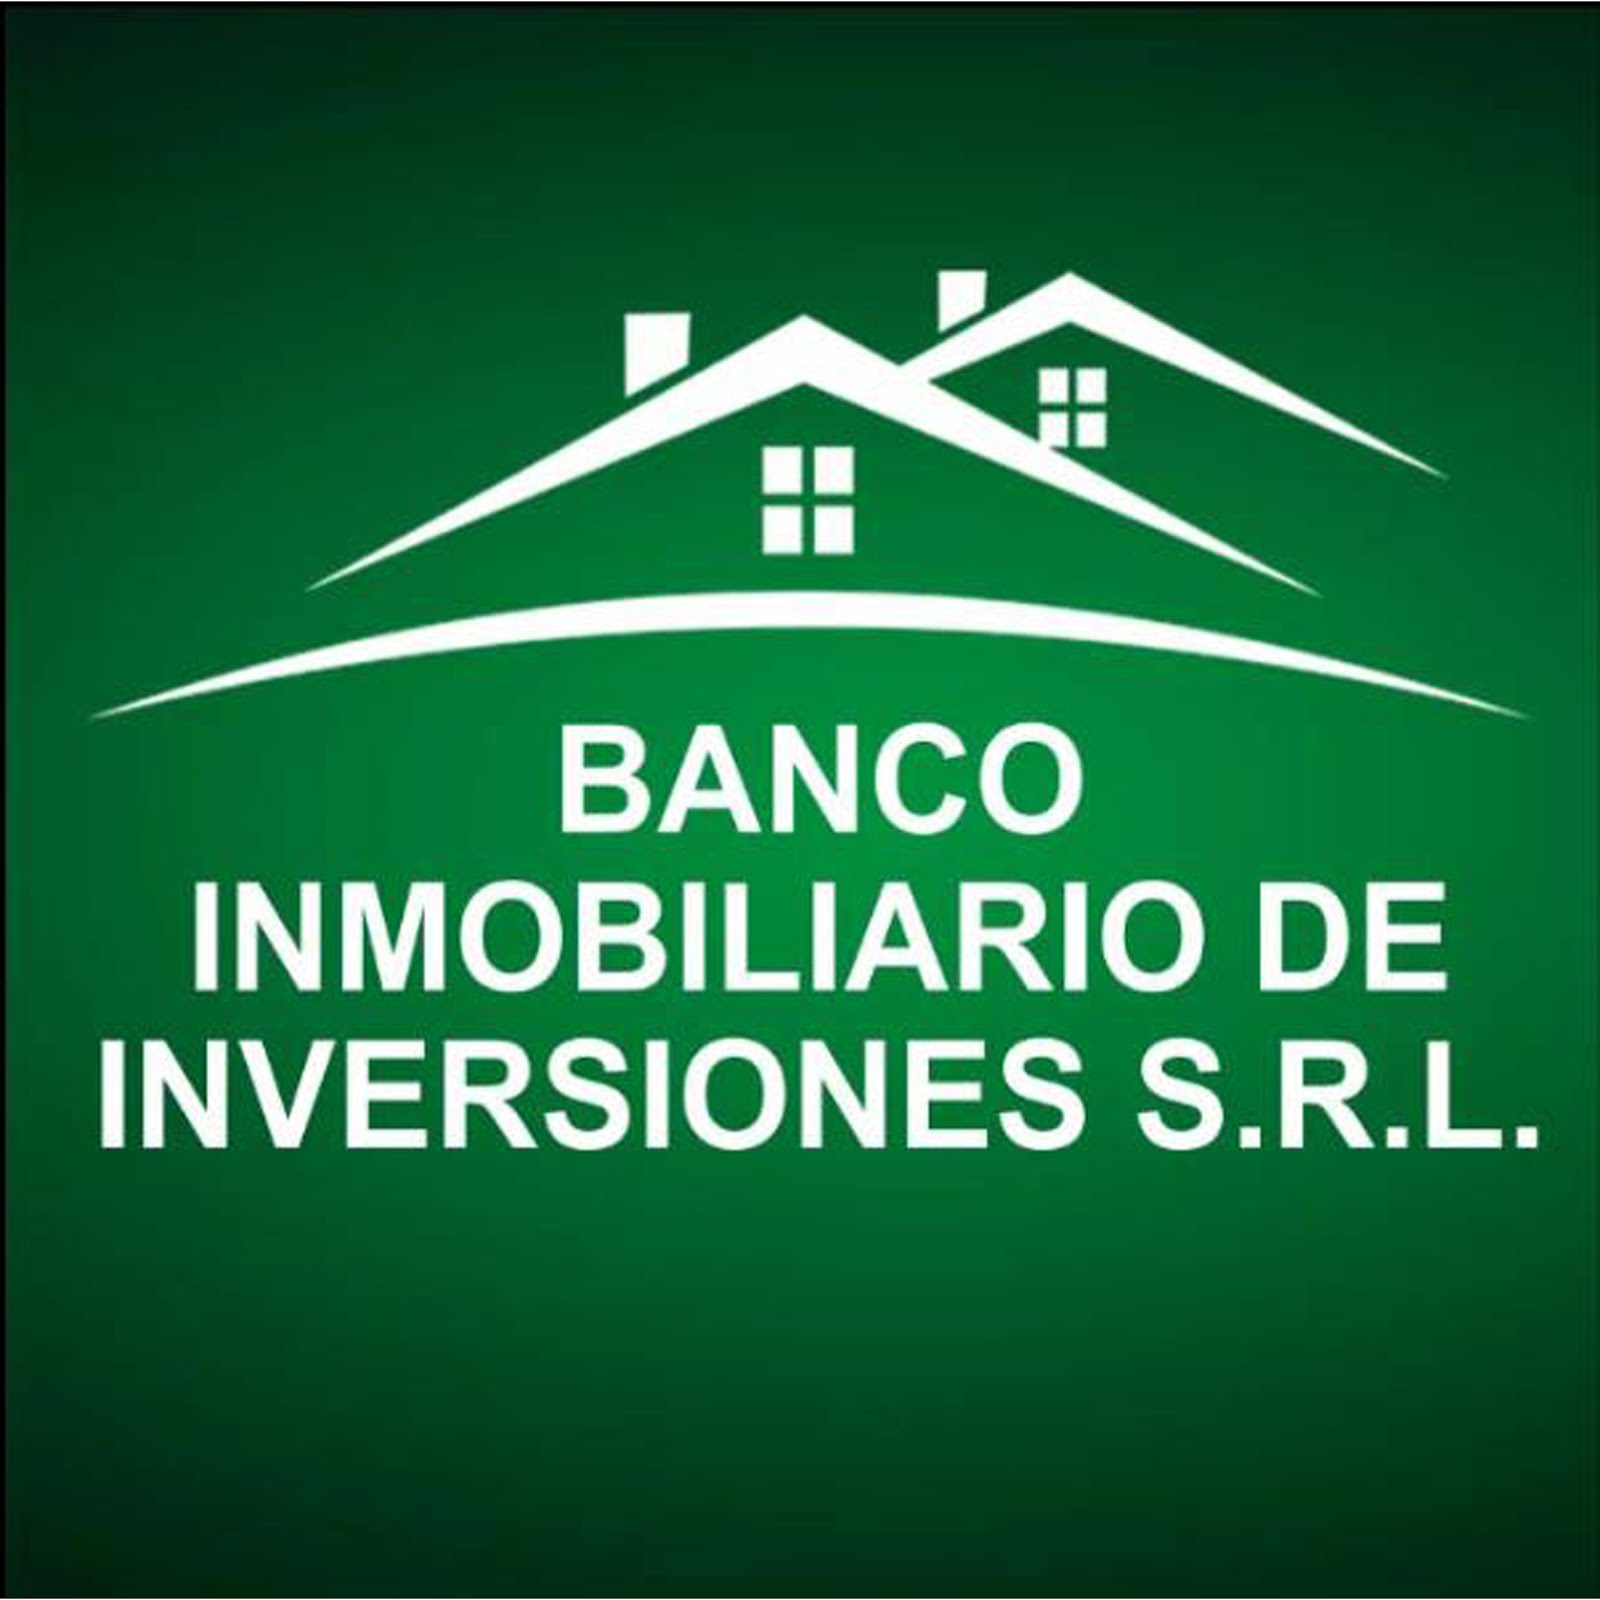 BANCO INMOBILIARIO DE INVERSIONES S.R.L.